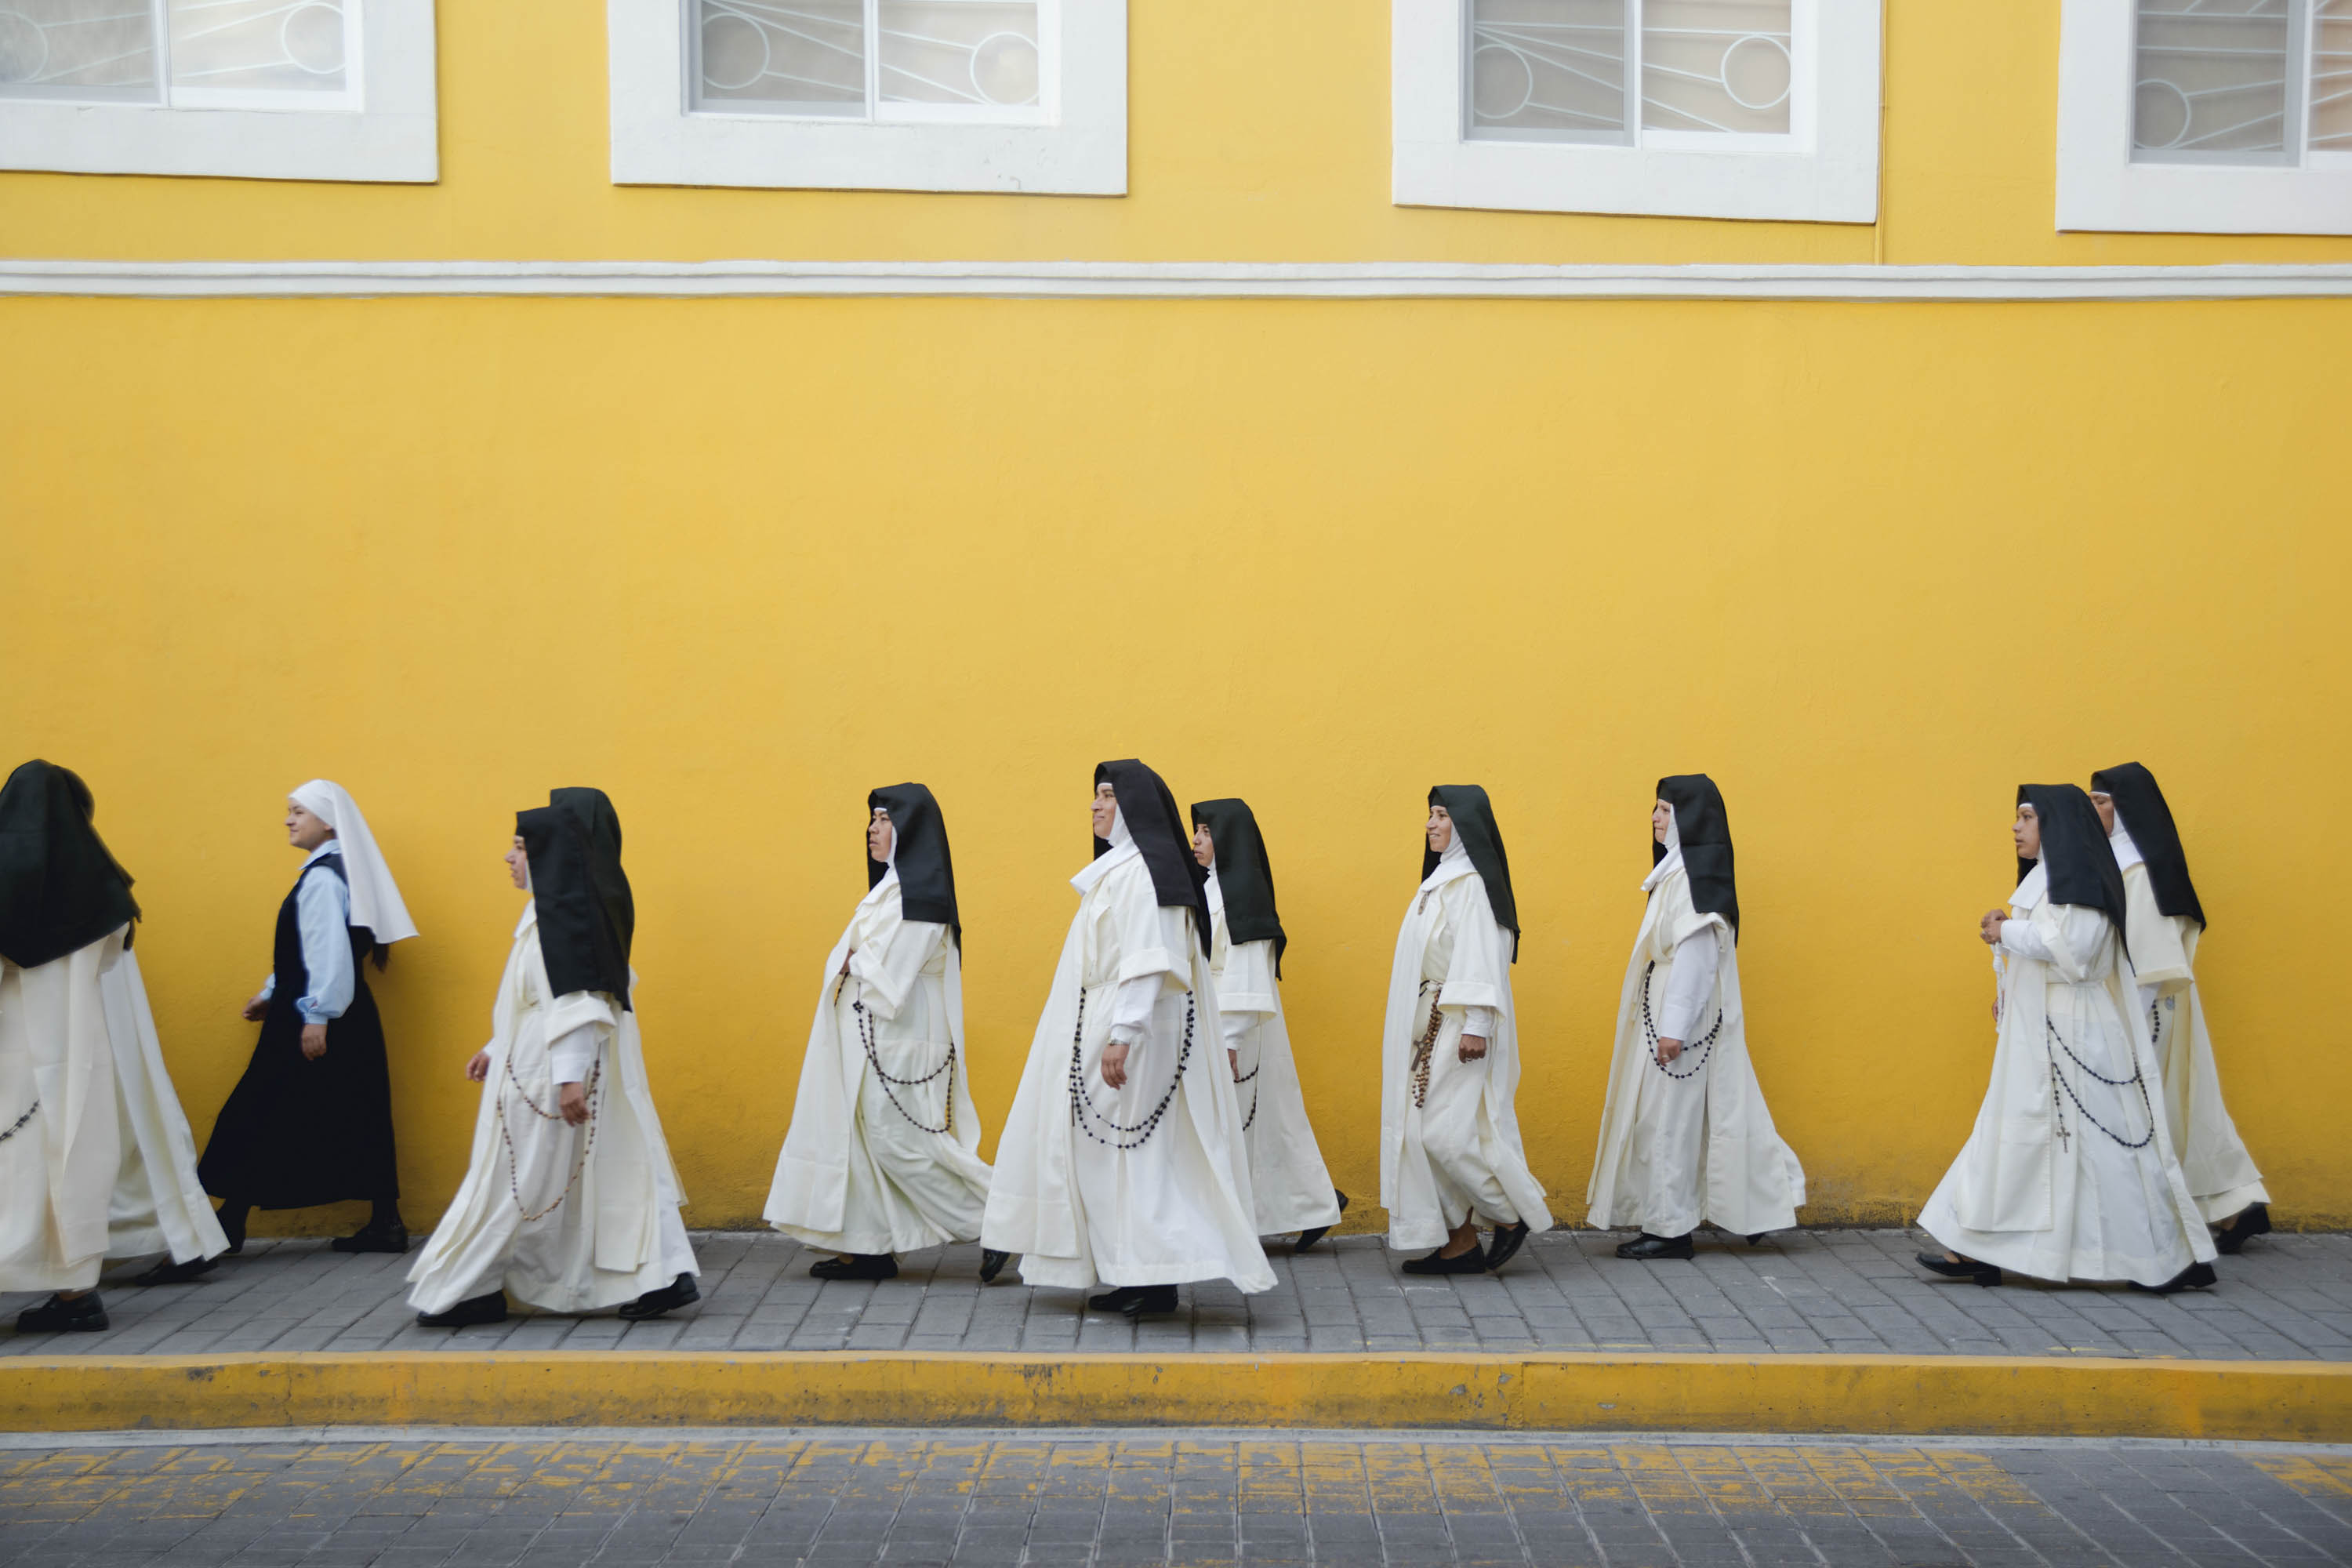 Монахини в монастыре. Жизнь монахинь в женском монастыре. Женский католический монастырь. Католическая монахиня.